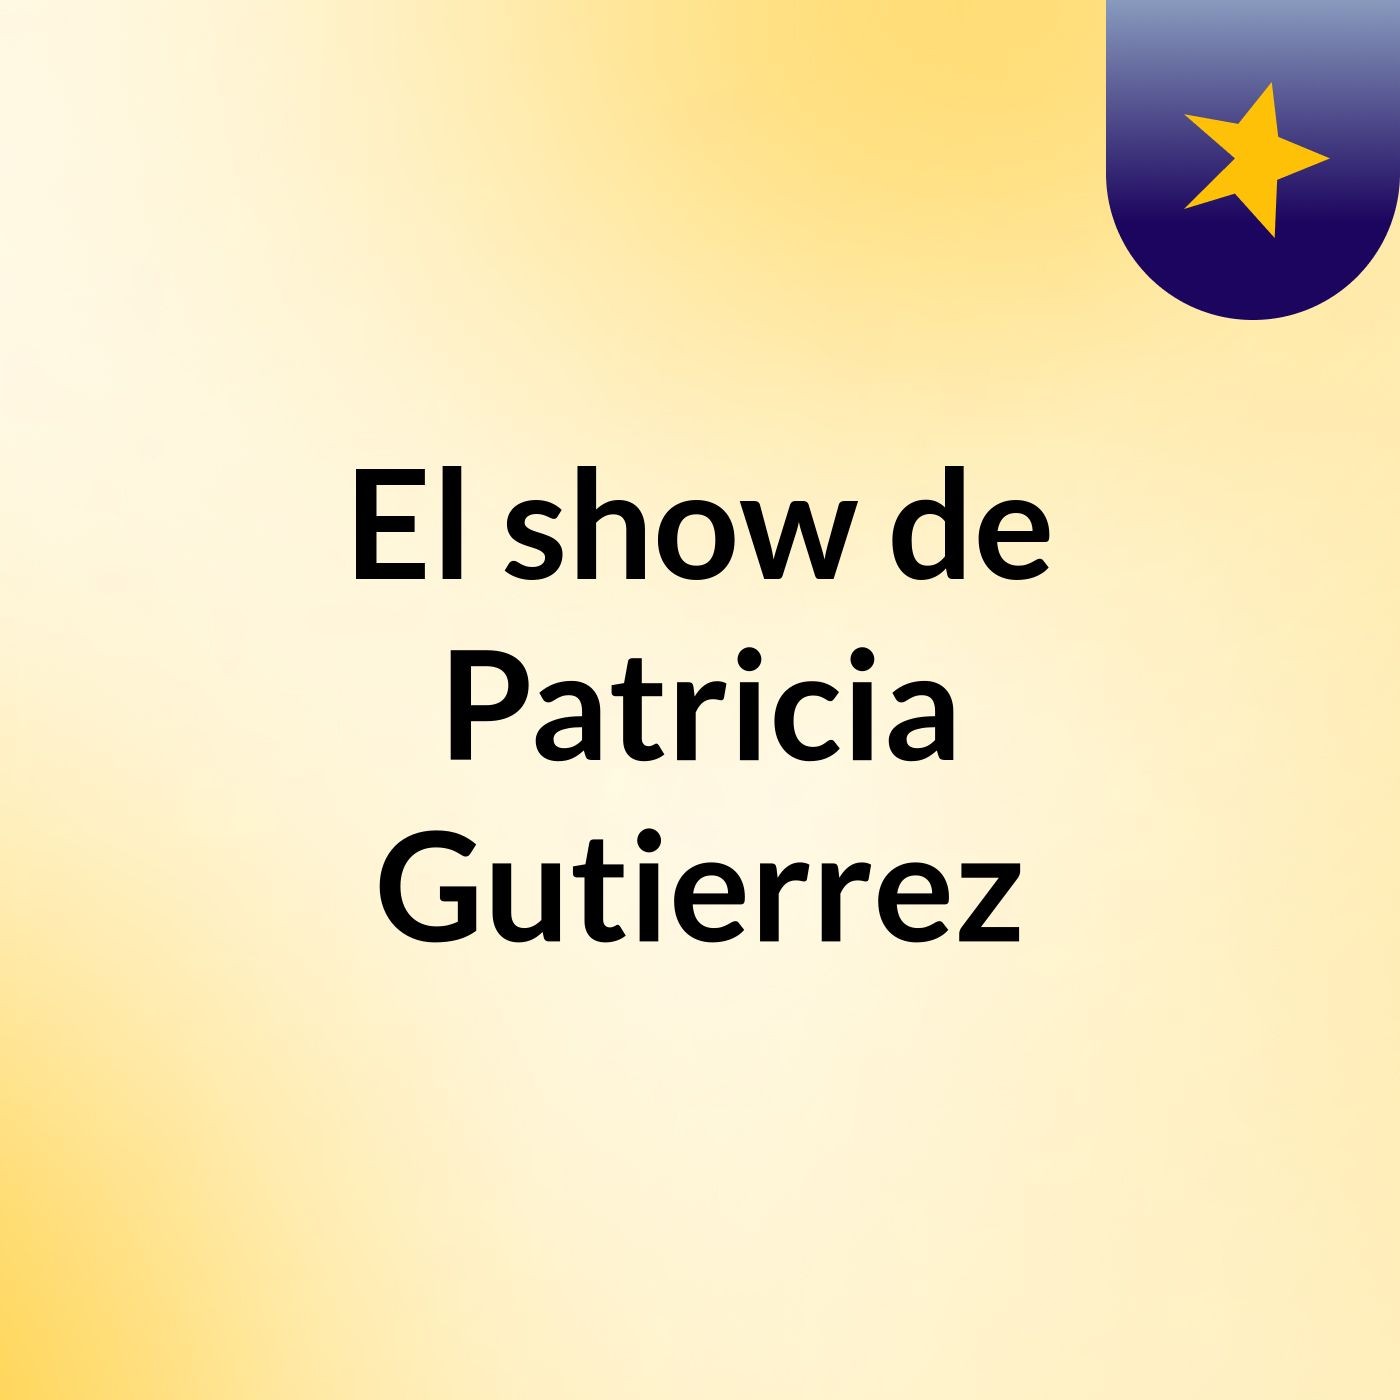 El show de Patricia Gutierrez